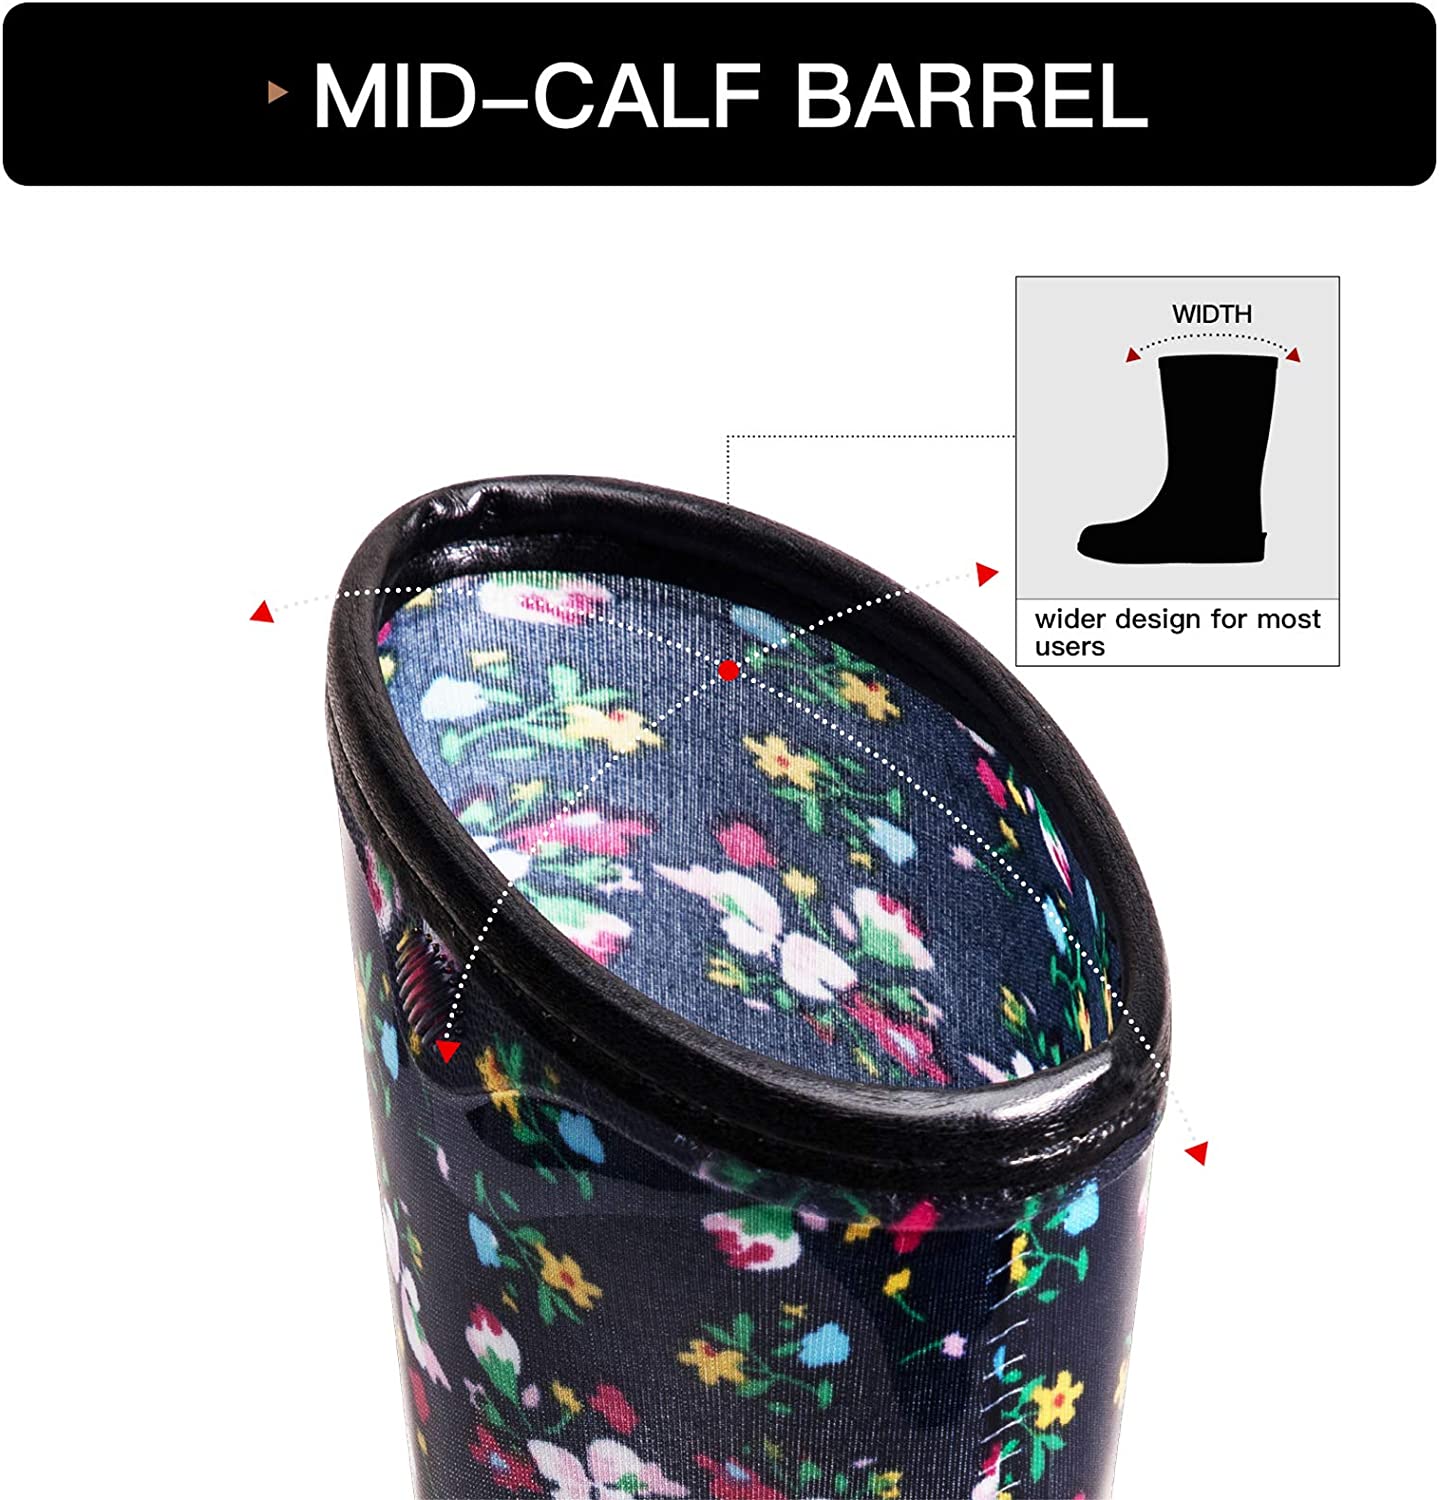 Blue Floral Waterproof Print Mid-Cut Rain Boots - MYSOFT